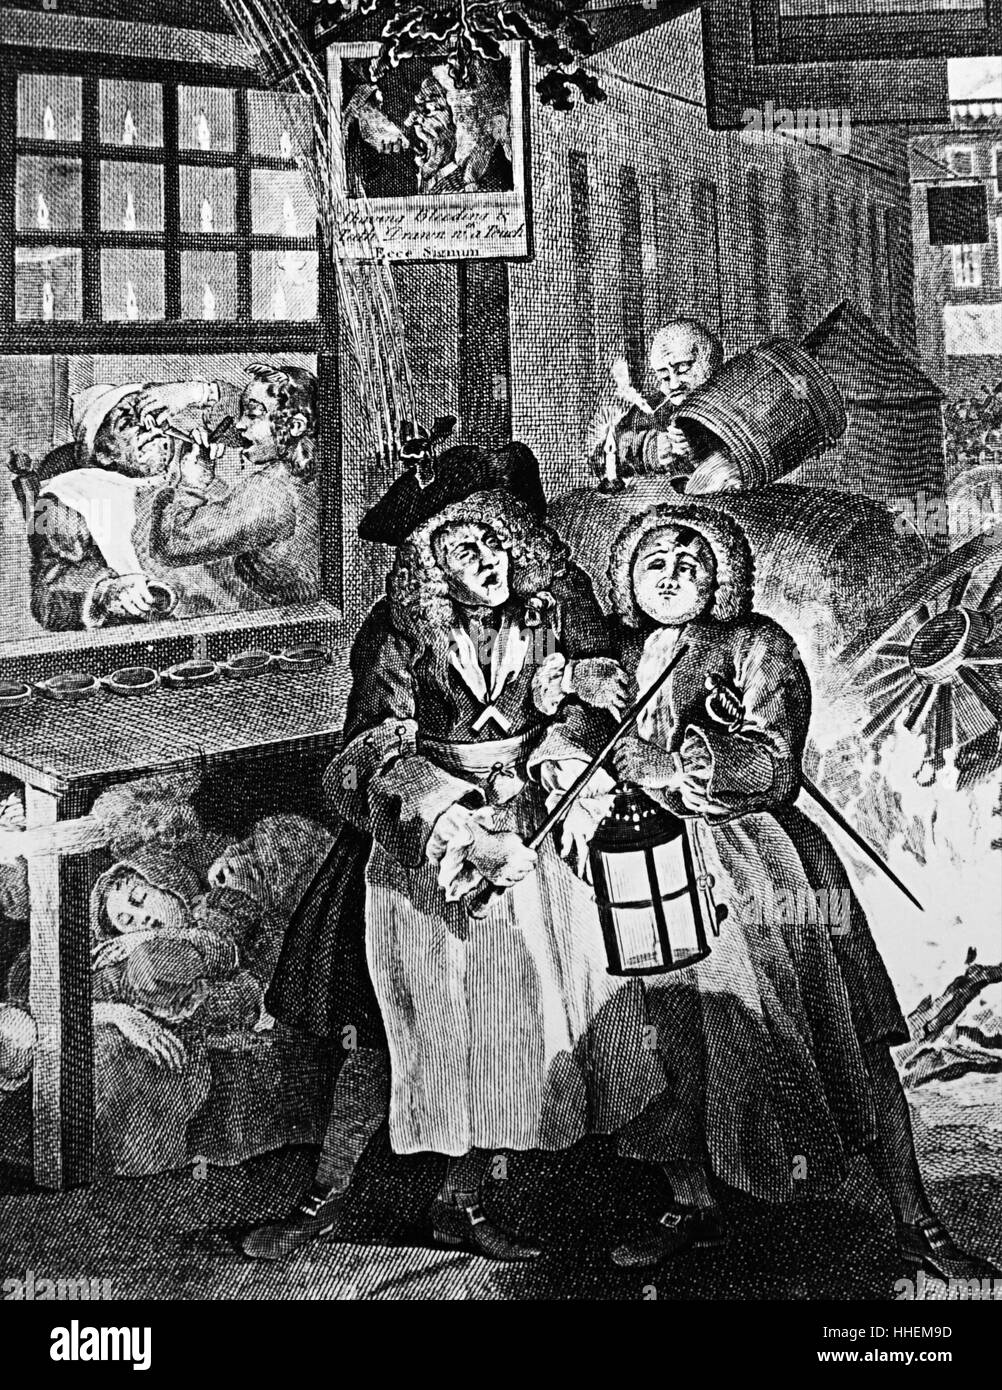 Gravure intitulée "nuit" par William Hogarth (1697-1764) montrant deux ivrognes balancent leur chemin de la maison, aidé par la lumière d'une lanterne. En date du 18e siècle Banque D'Images